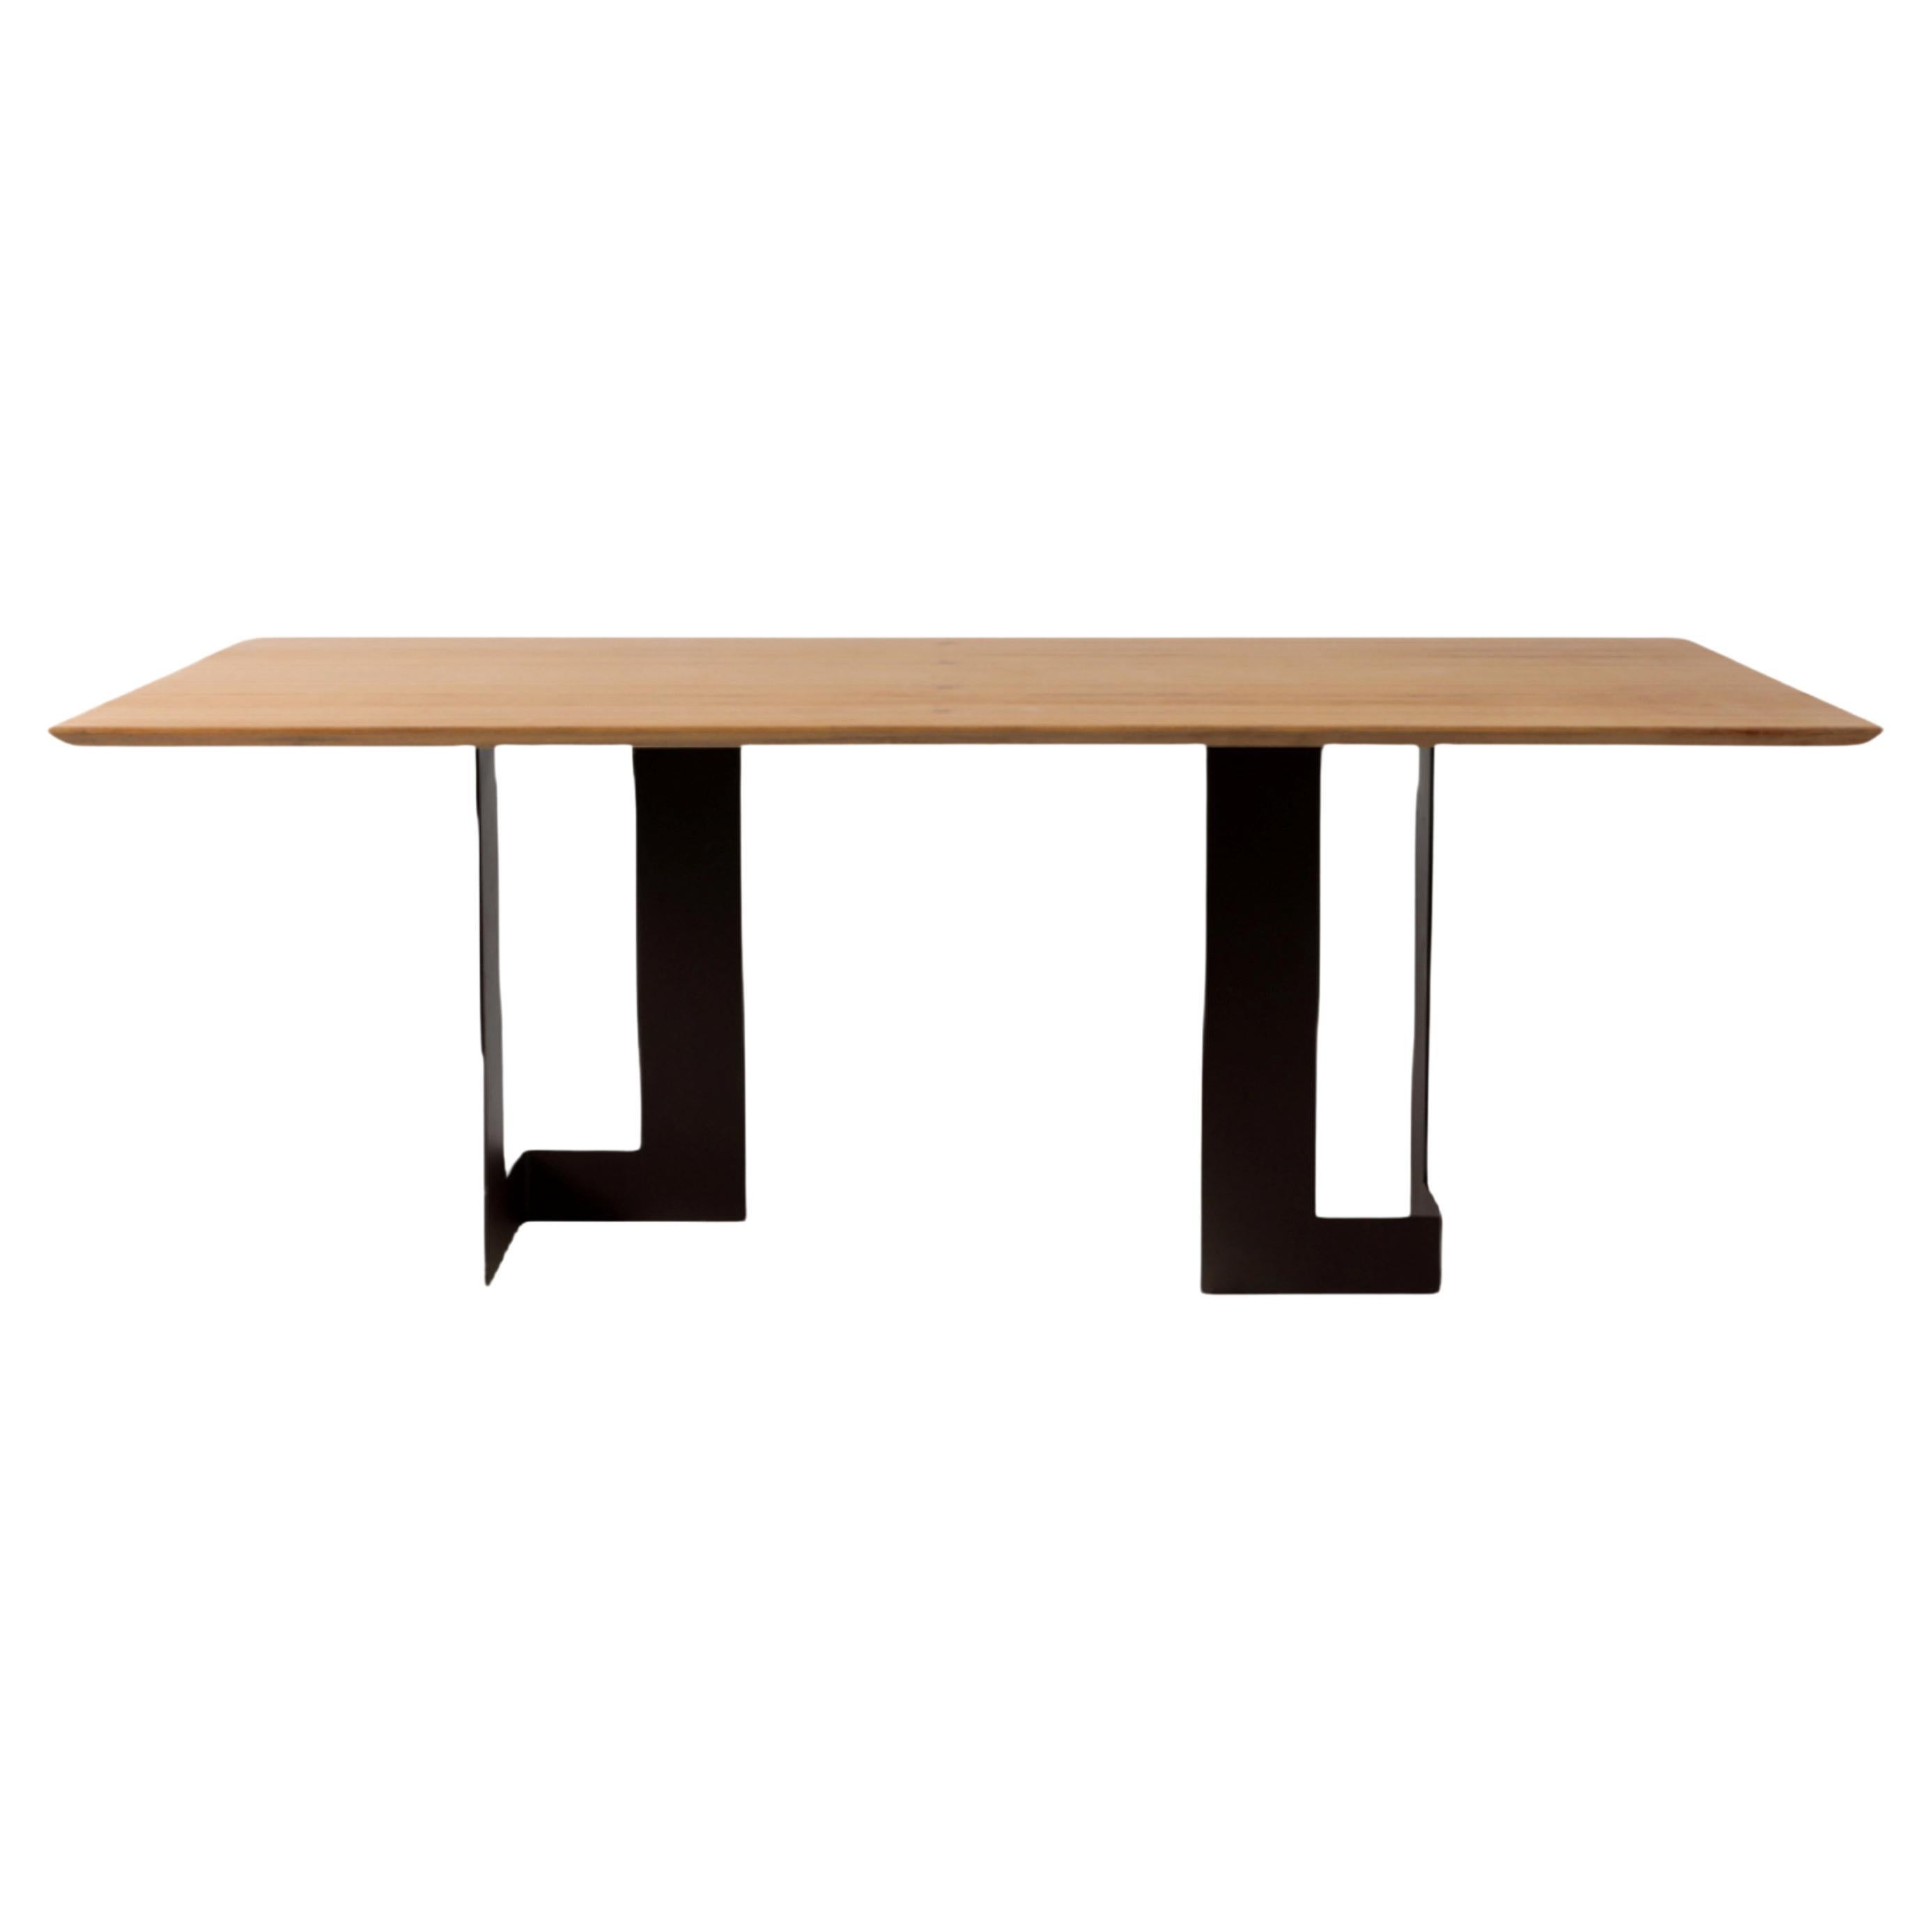 Table de salle à manger Planos de style minimaliste en bois massif et acier peint